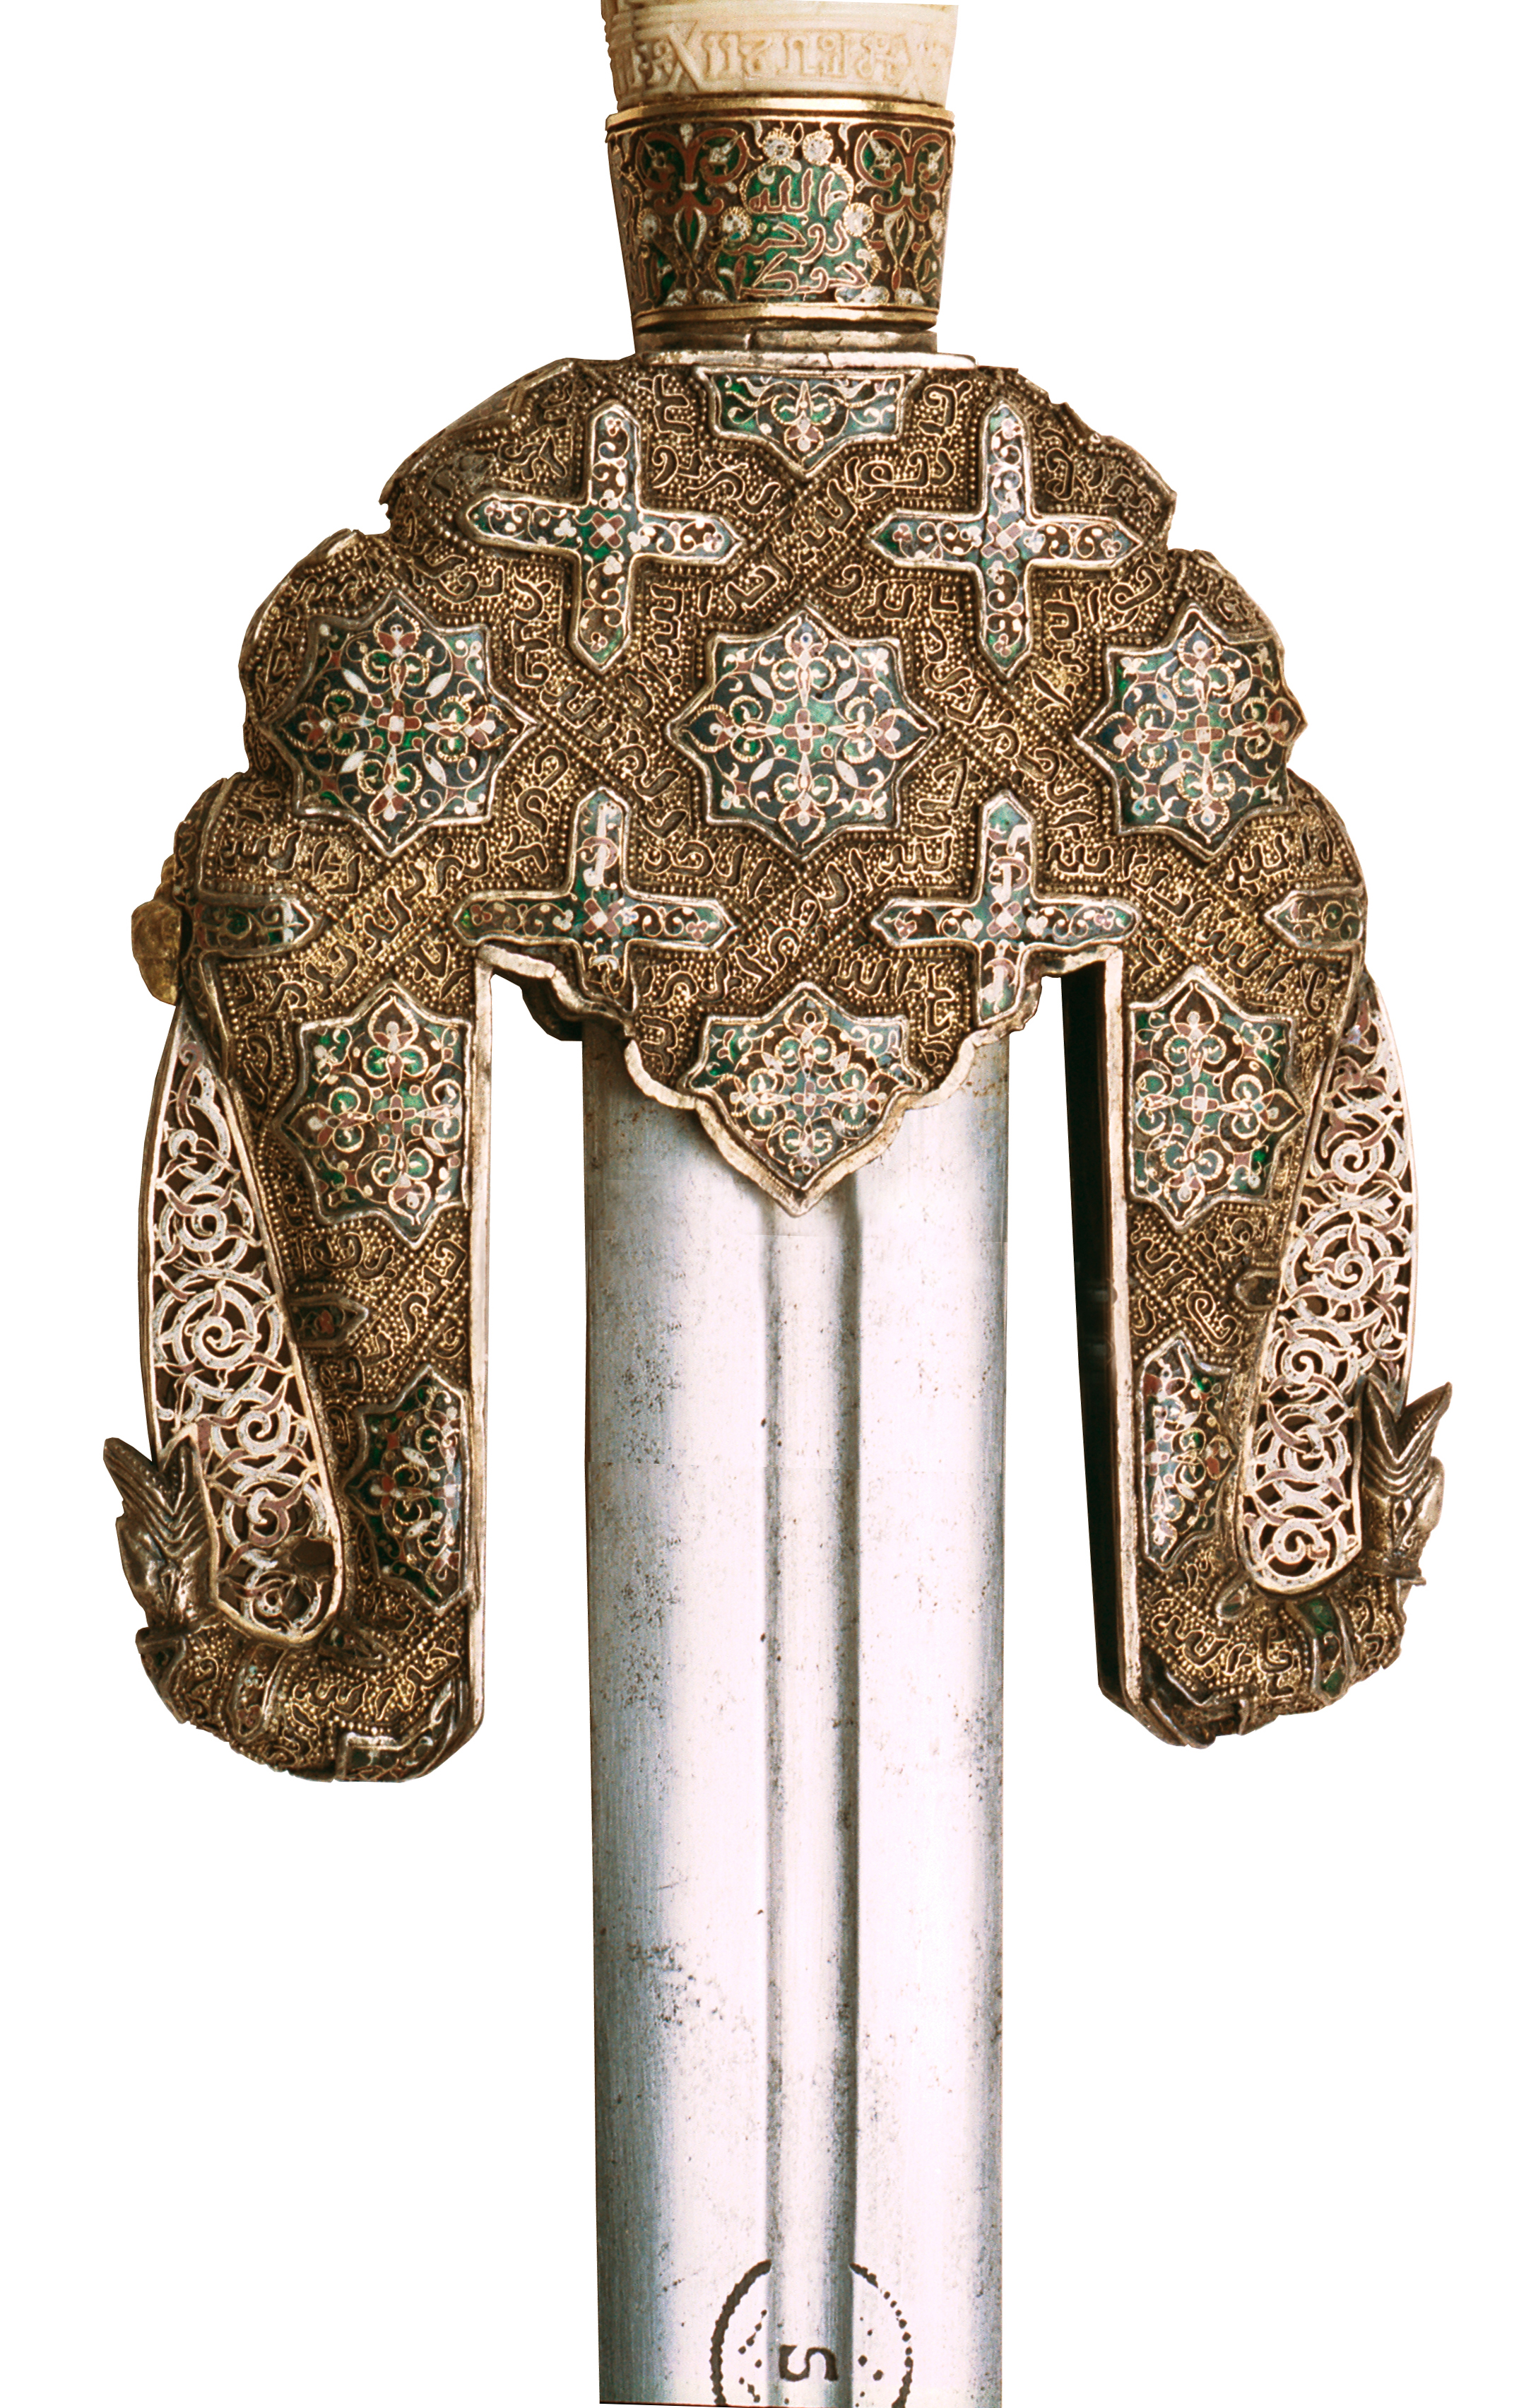 Jineta sword of Boabdil detail